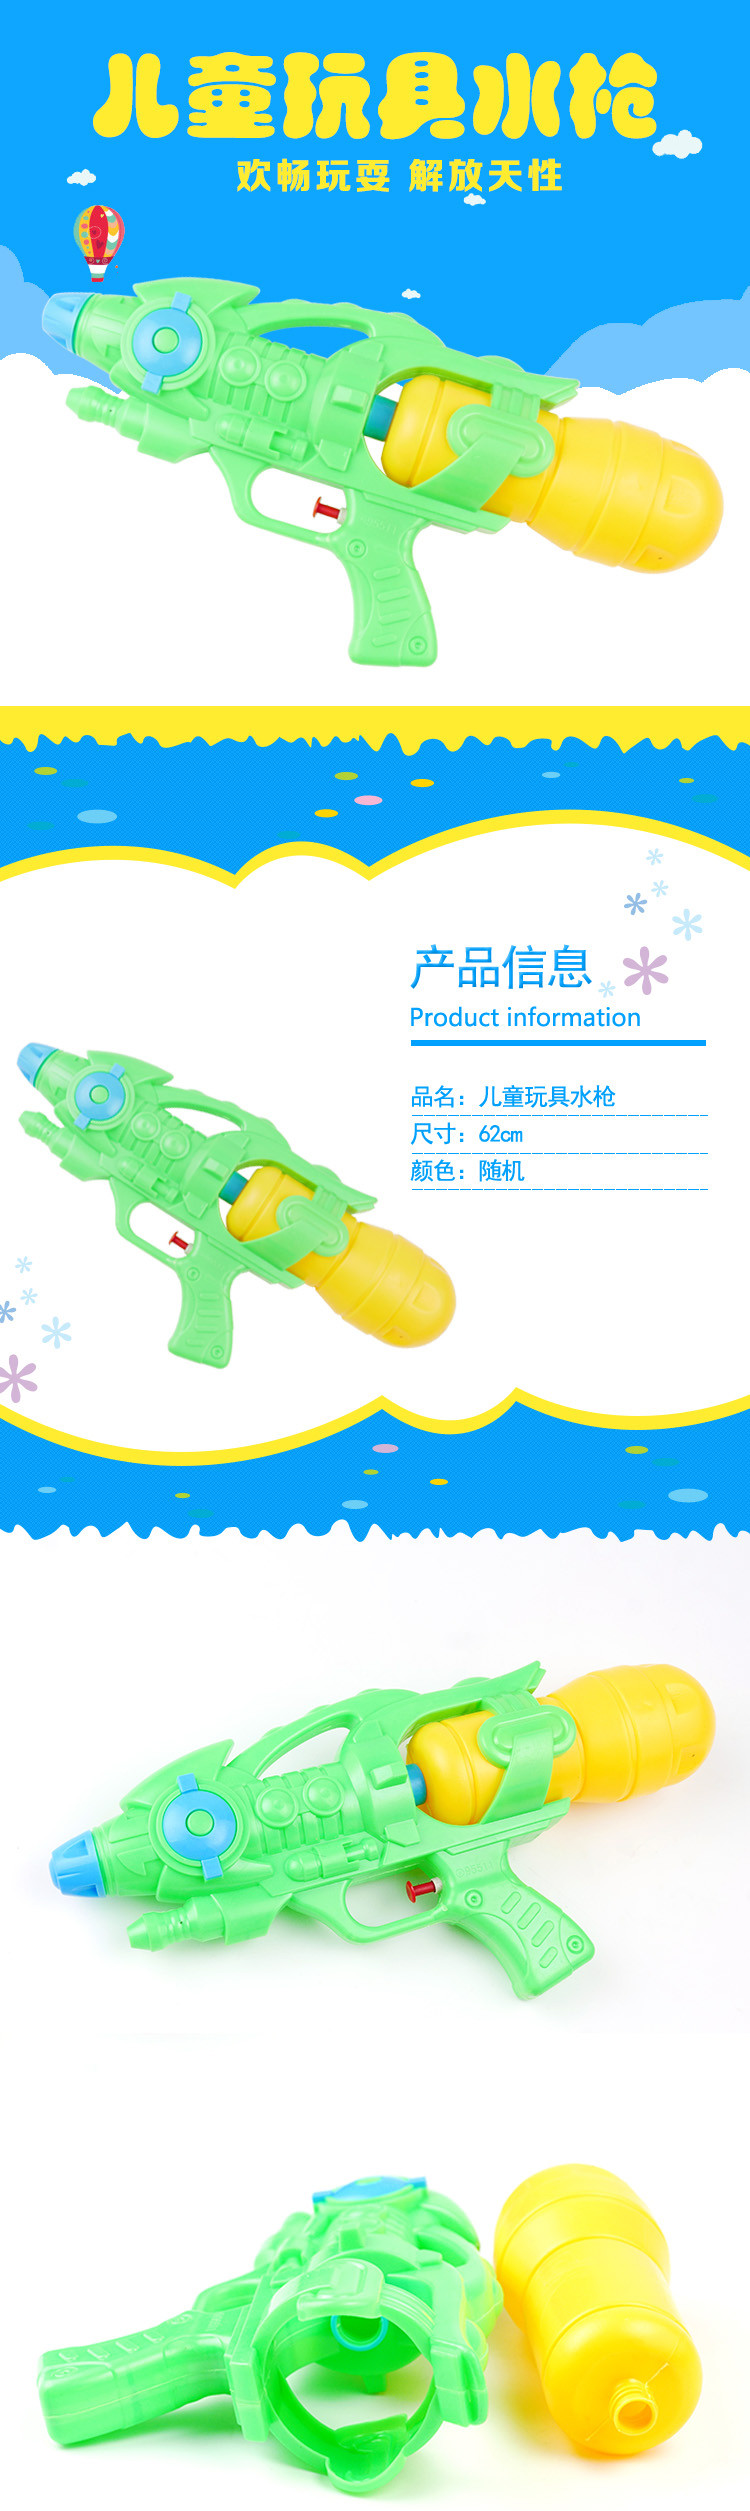 儿童玩具水枪95511 乐钻水枪 沙滩玩具 戏水玩具水枪